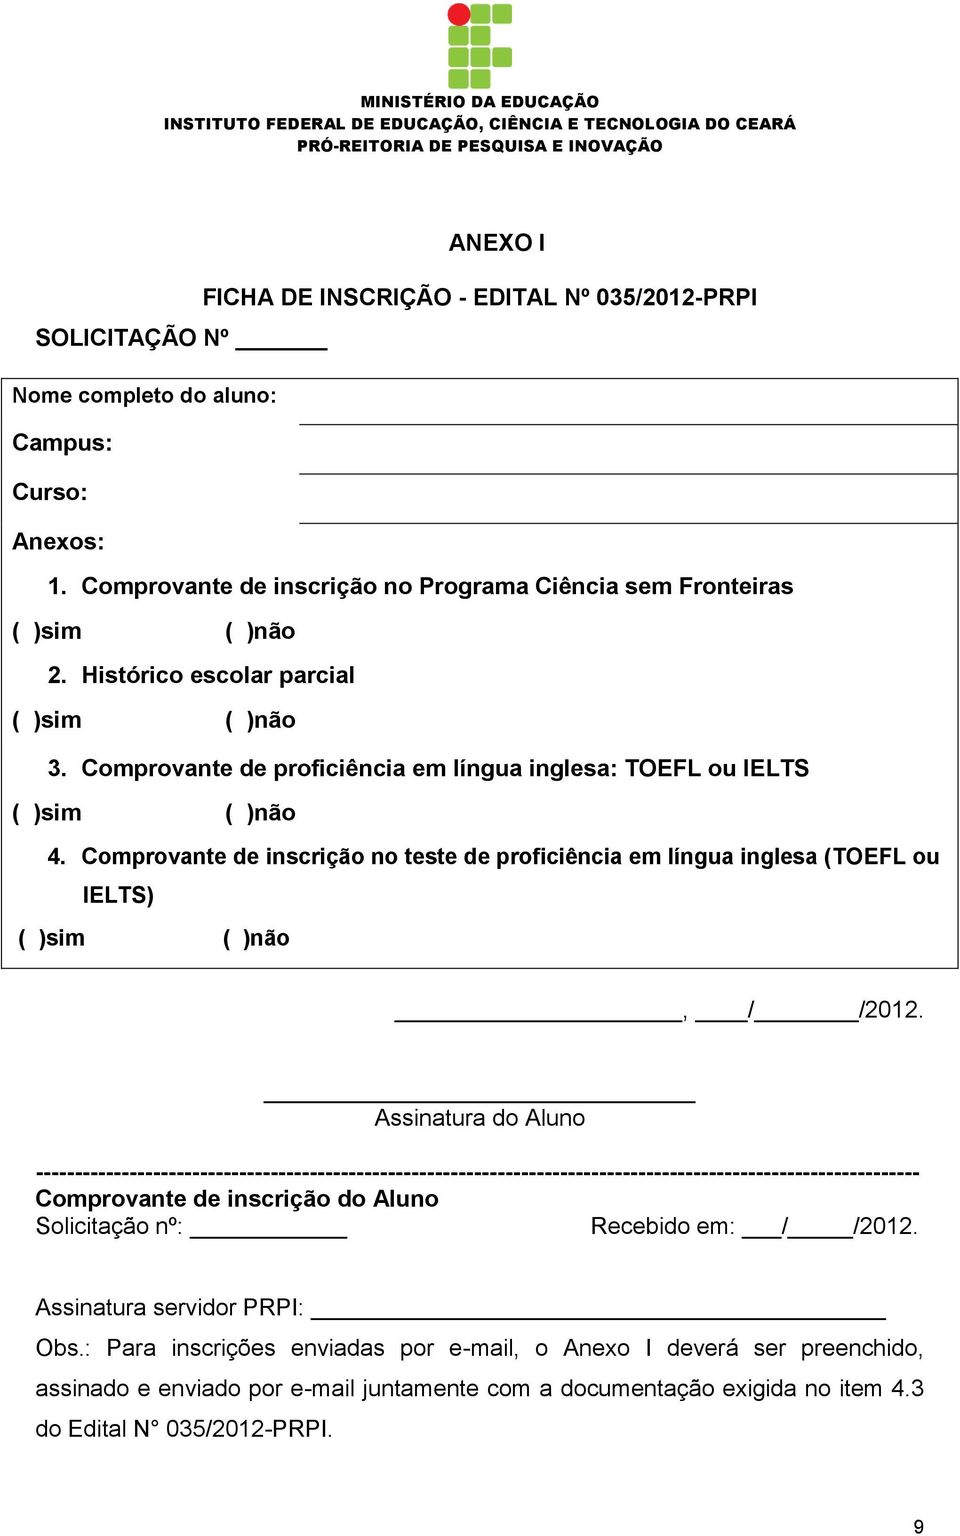 Comprovante de inscrição no teste de proficiência em língua inglesa (TOEFL ou IELTS) ( )sim ( )não, / /2012.